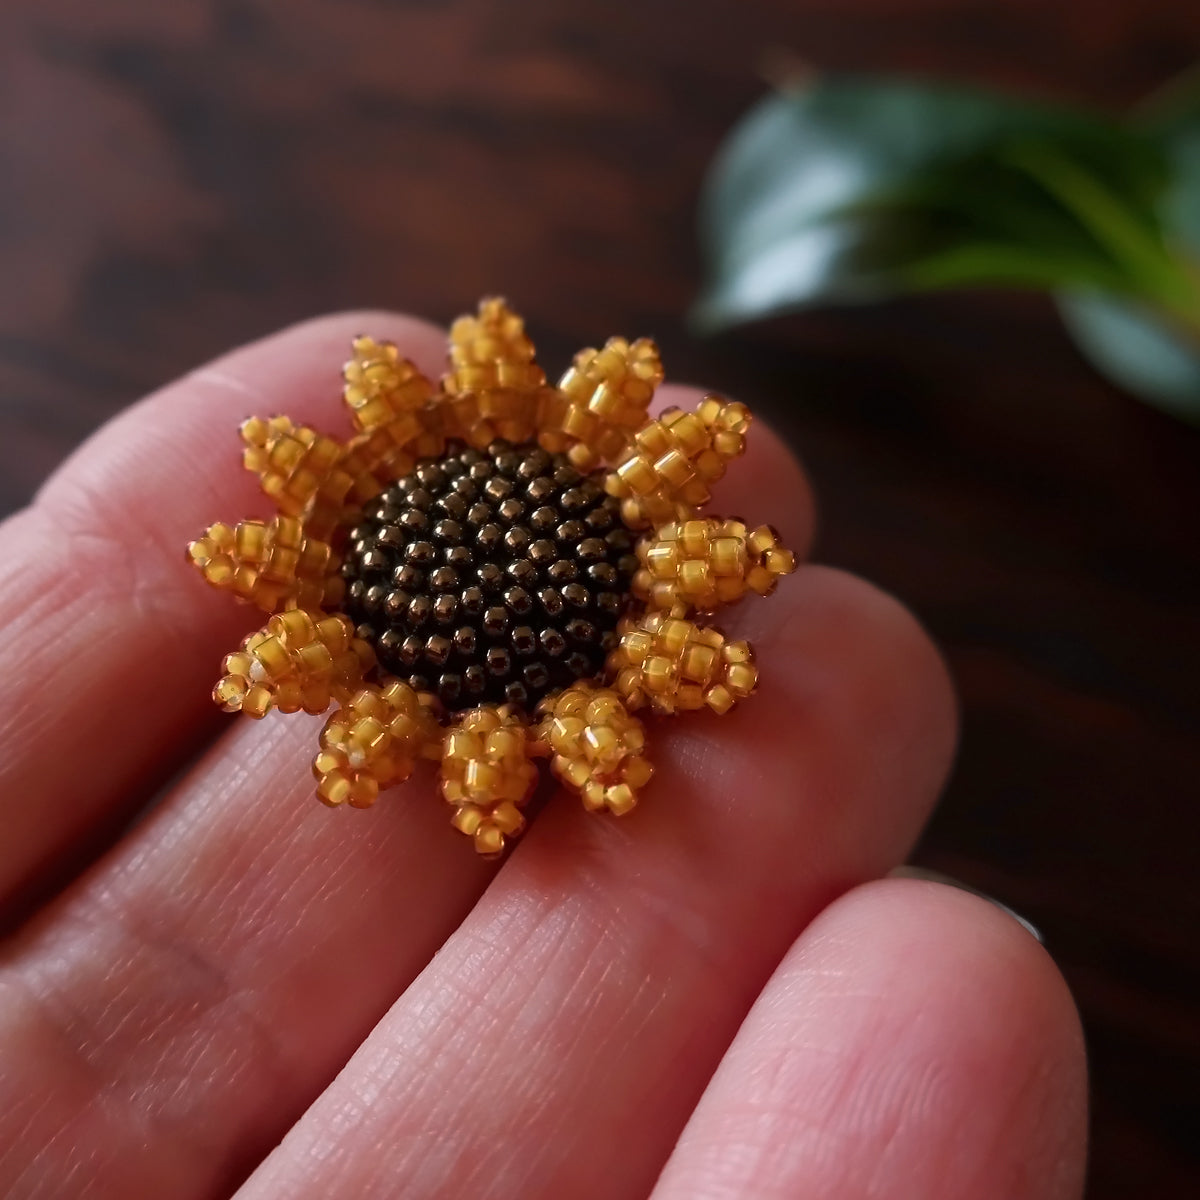 Heart in Hawaii Mini Beaded Sunflower Brooch - Marigold